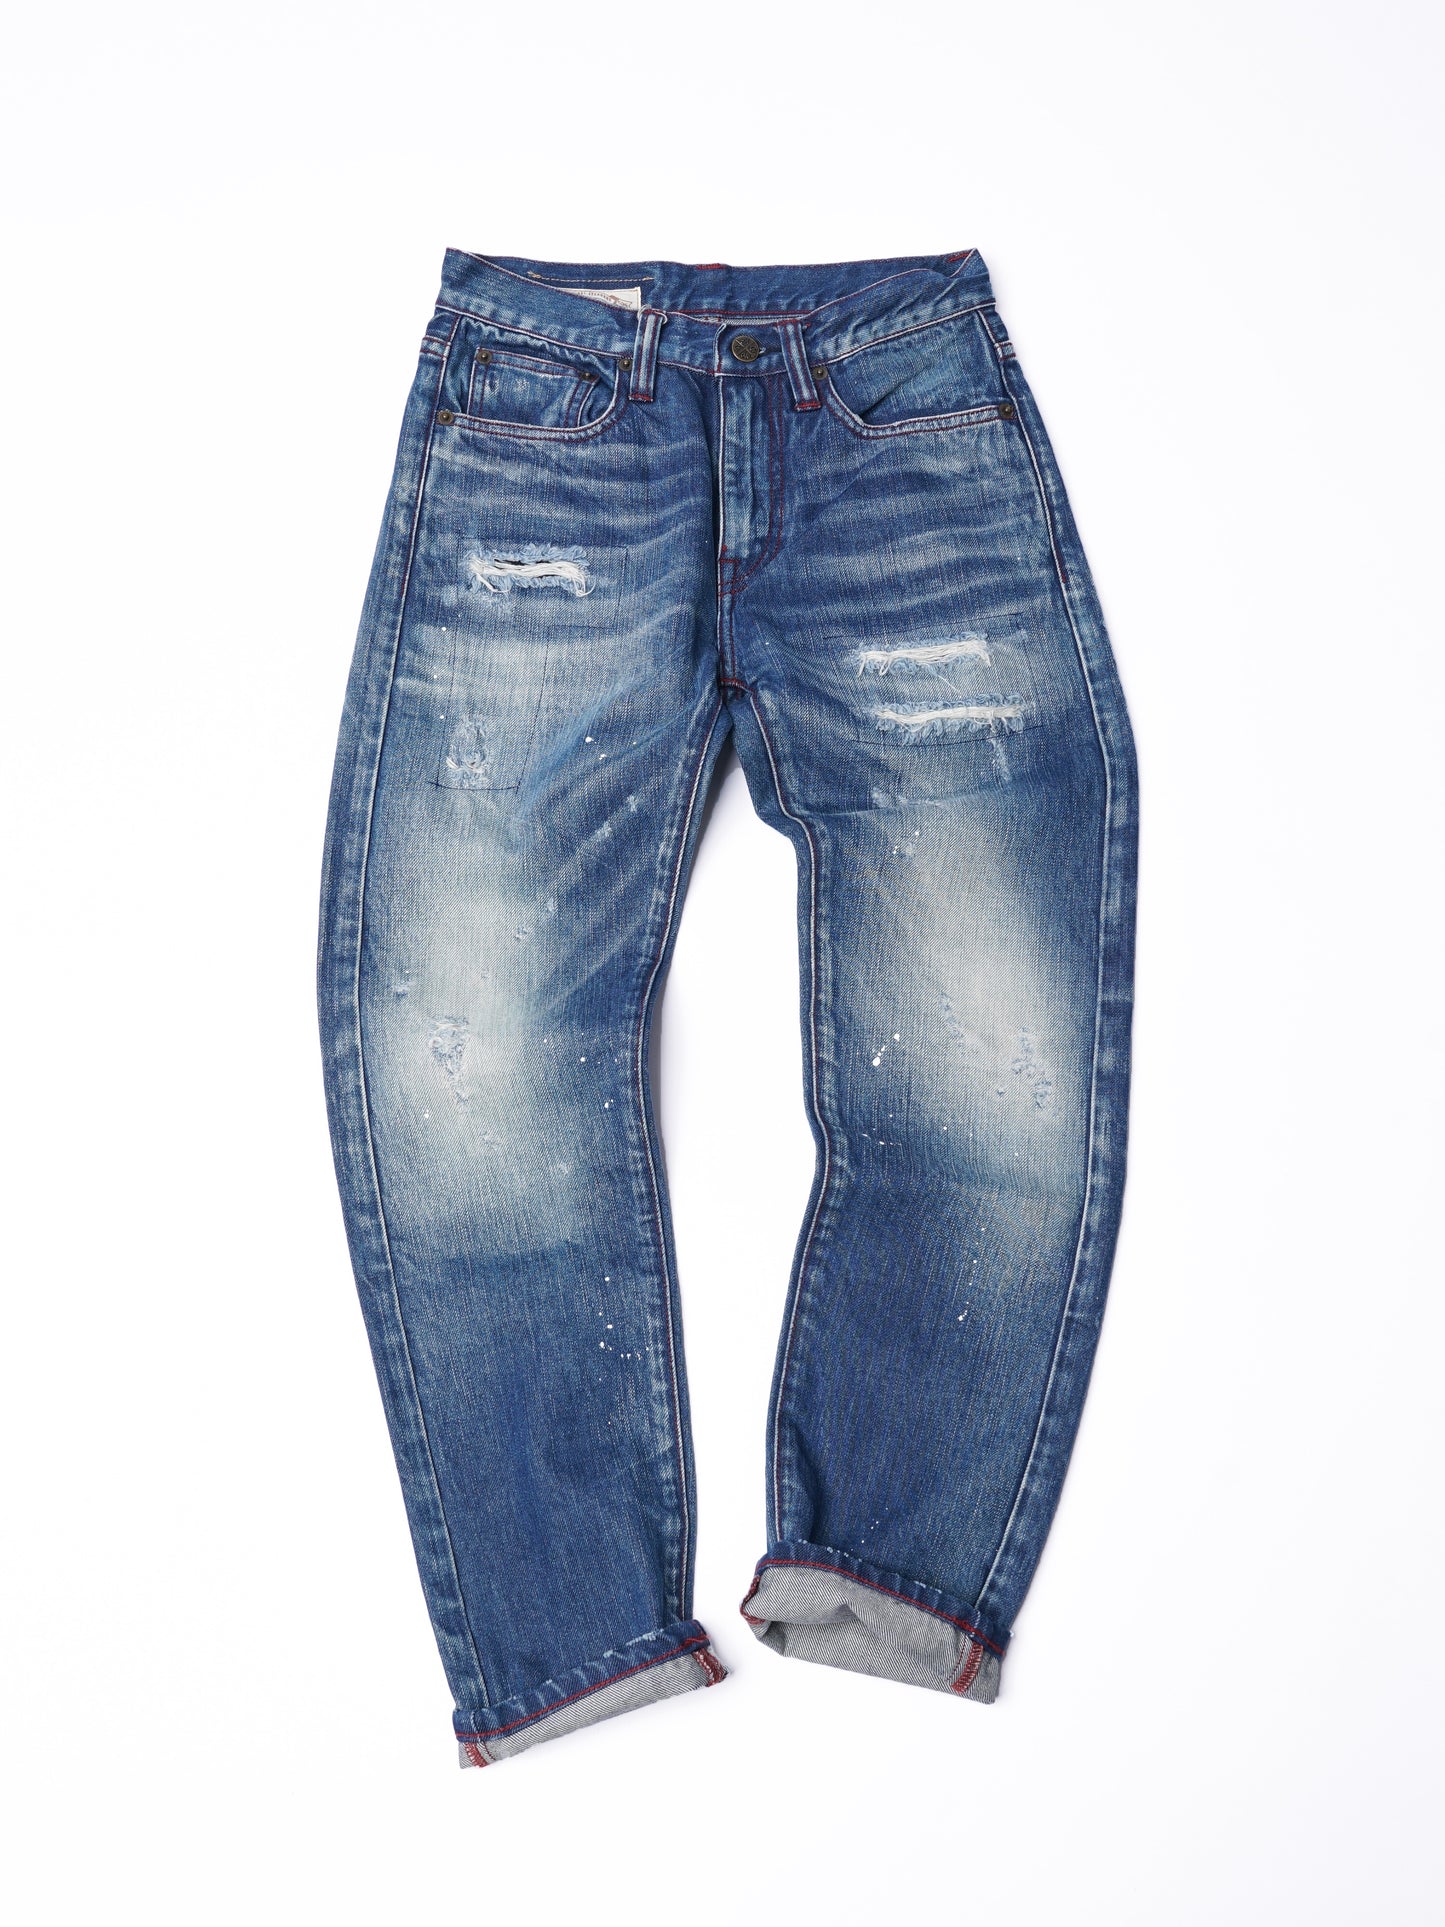 【訂製】No.29 Damaged Washed Slim Fit Jeans